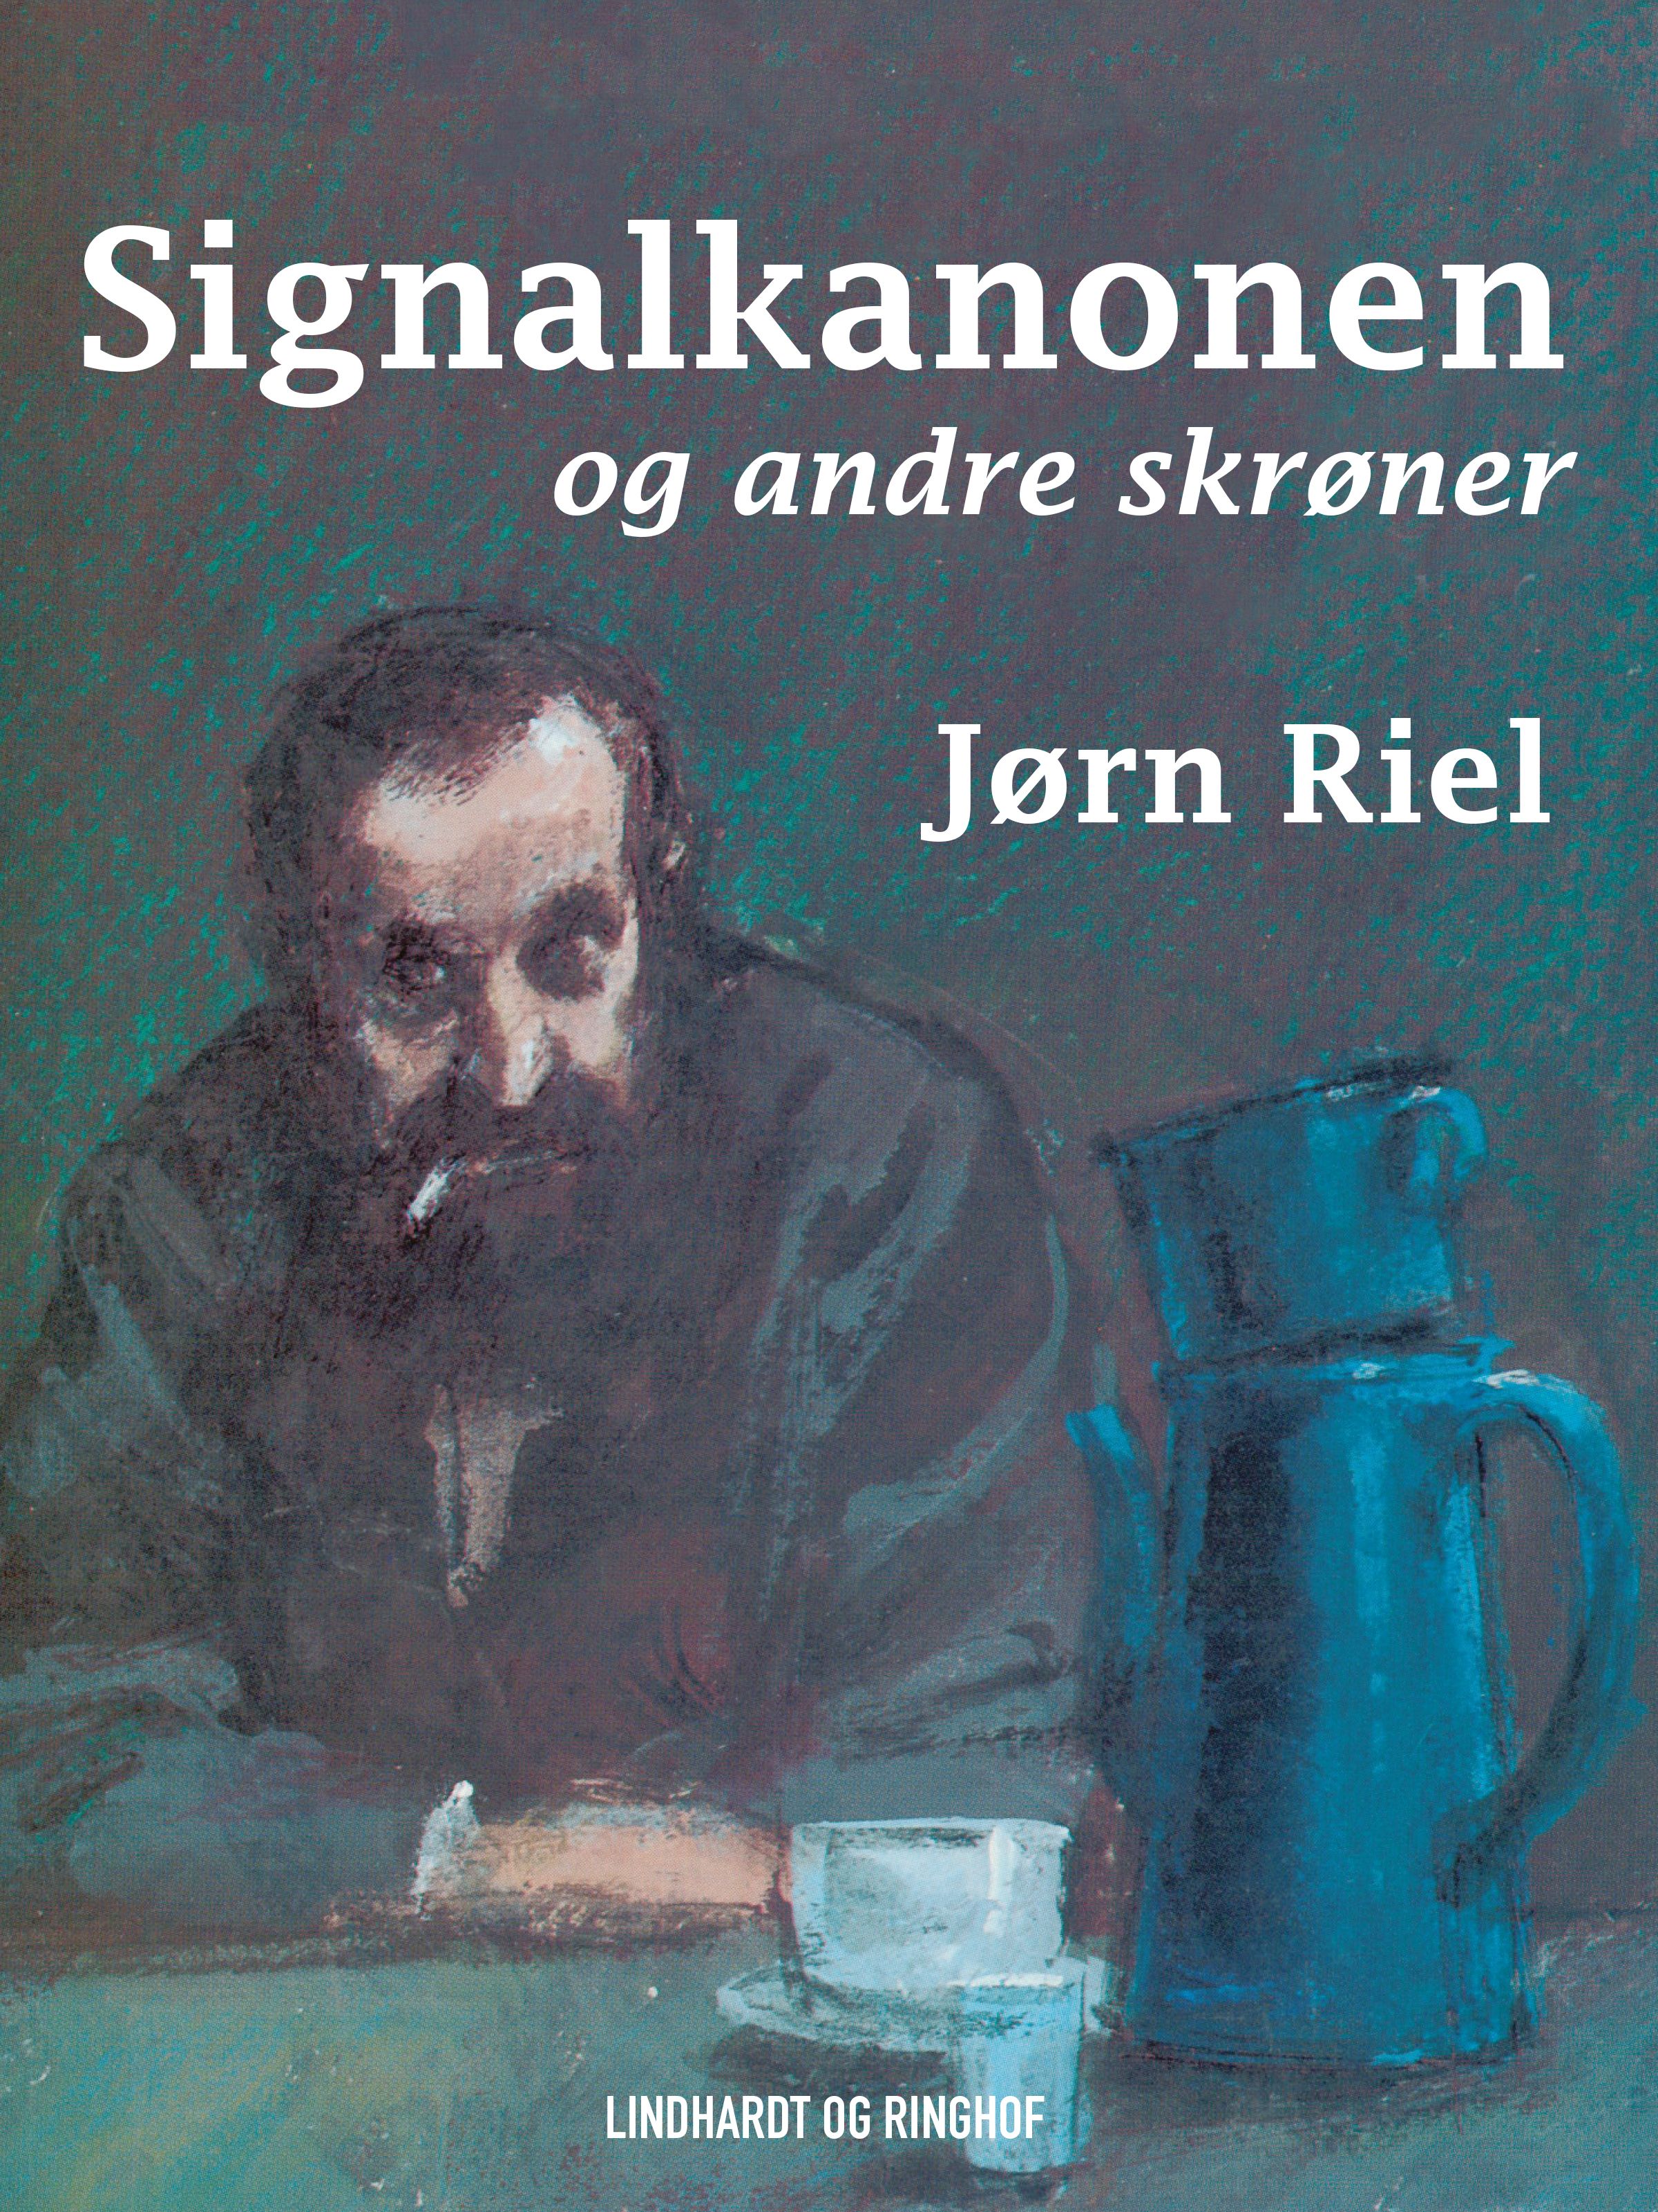 Signalkanonen og andre skrøner, eBook by Jørn Riel